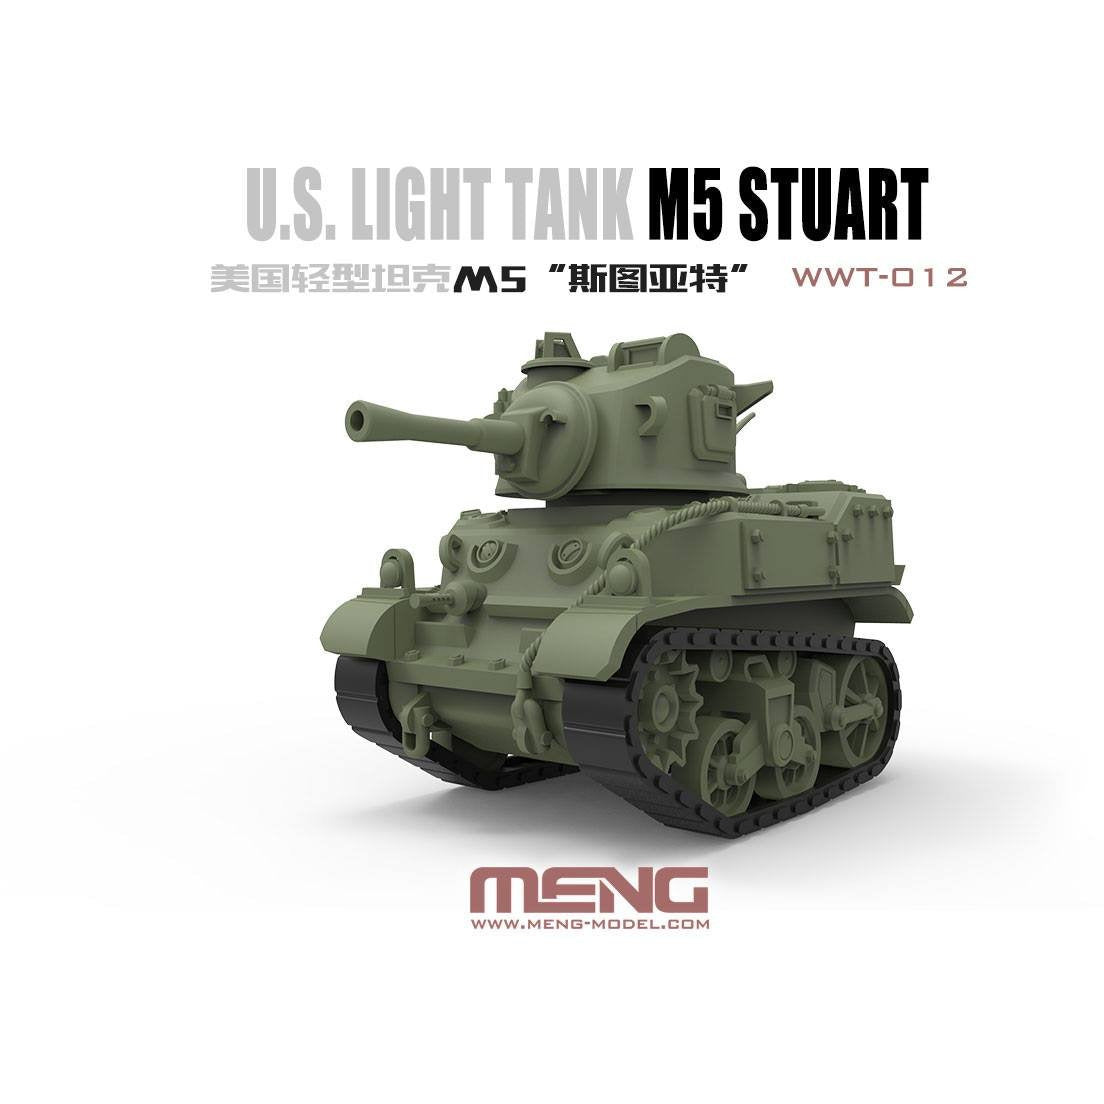 M5 Stuart U.S. Light Tank WWT-012 World War Toons by Meng